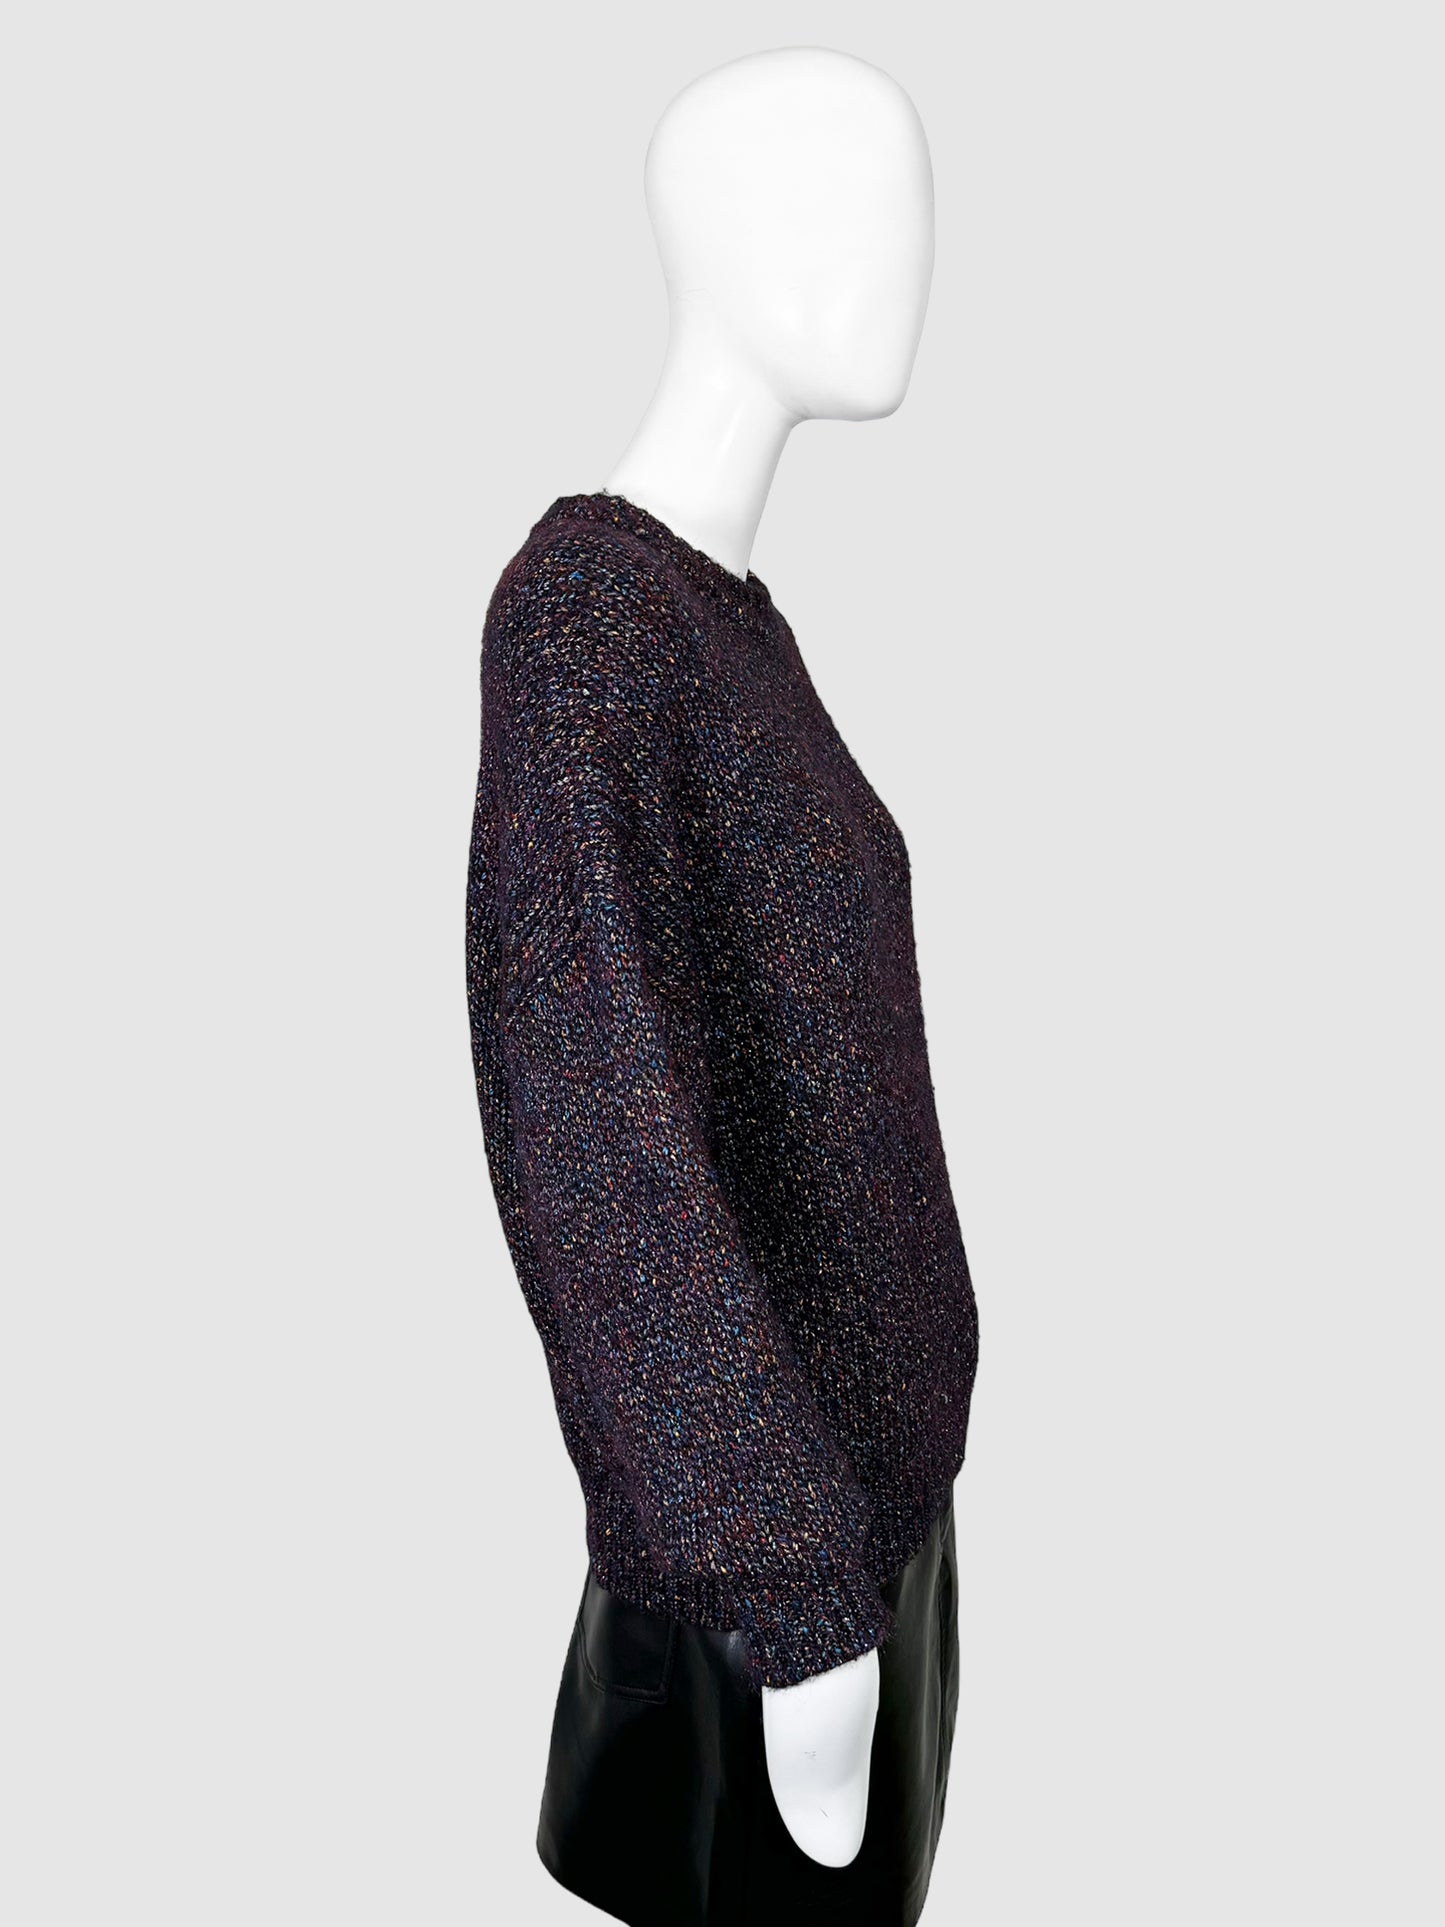 Isabel Marant Crewneck Sweater - Size 38